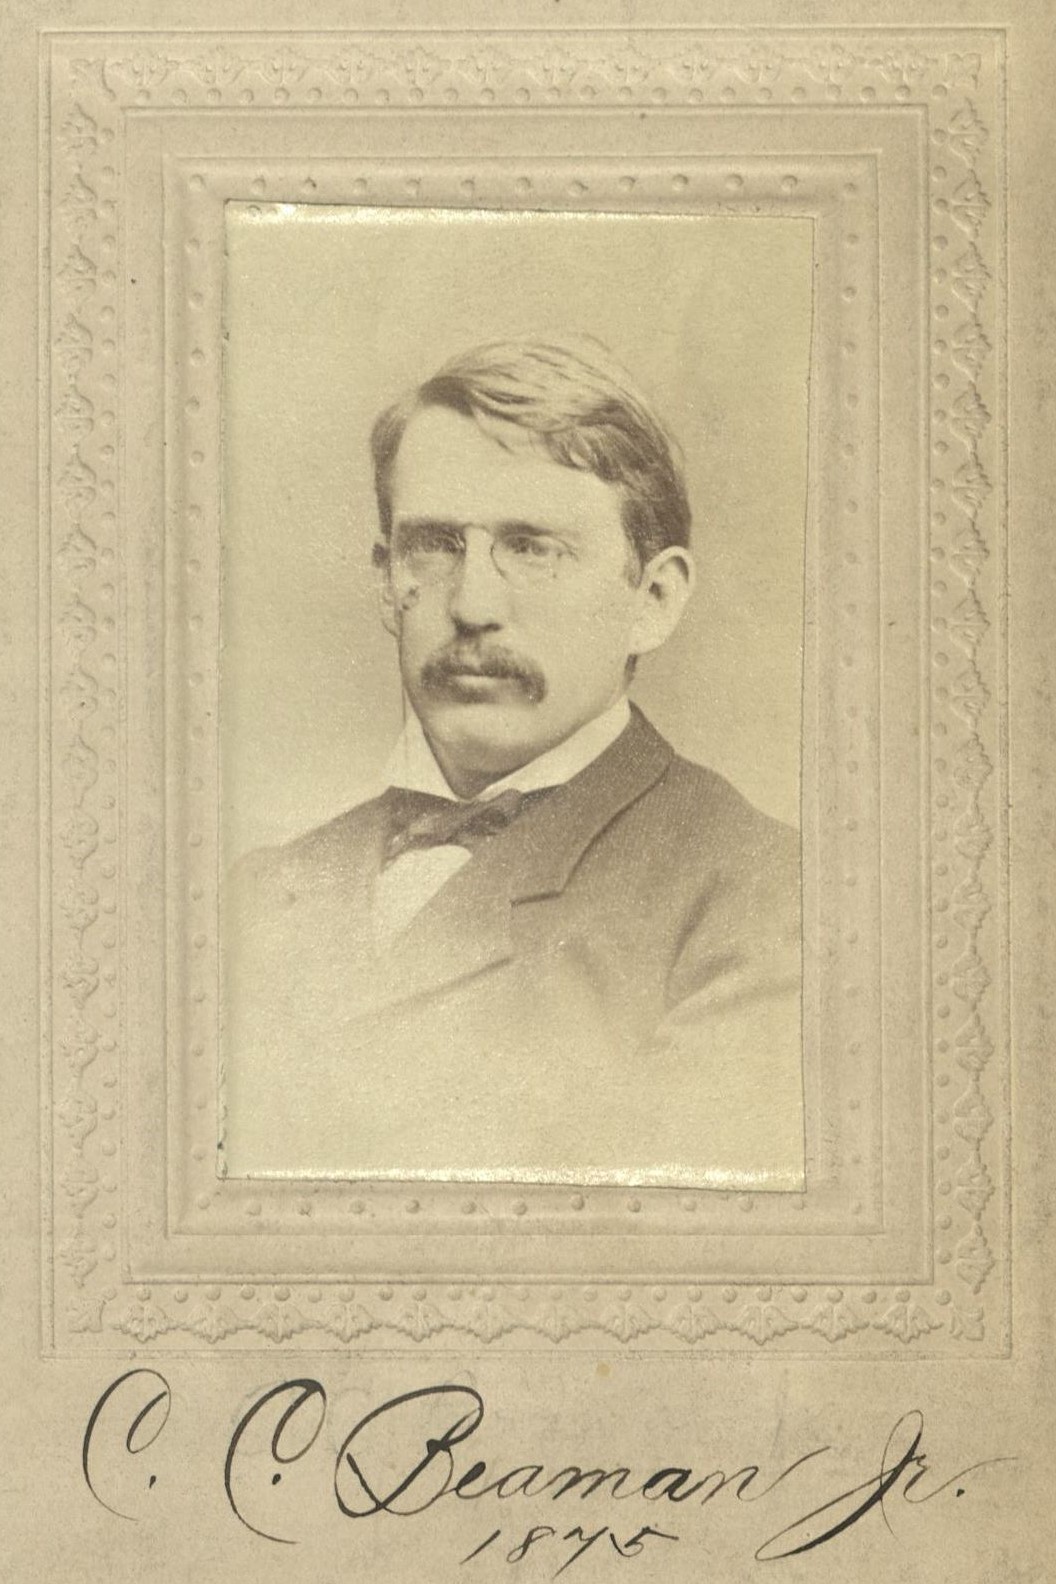 Member portrait of Charles C. Beaman